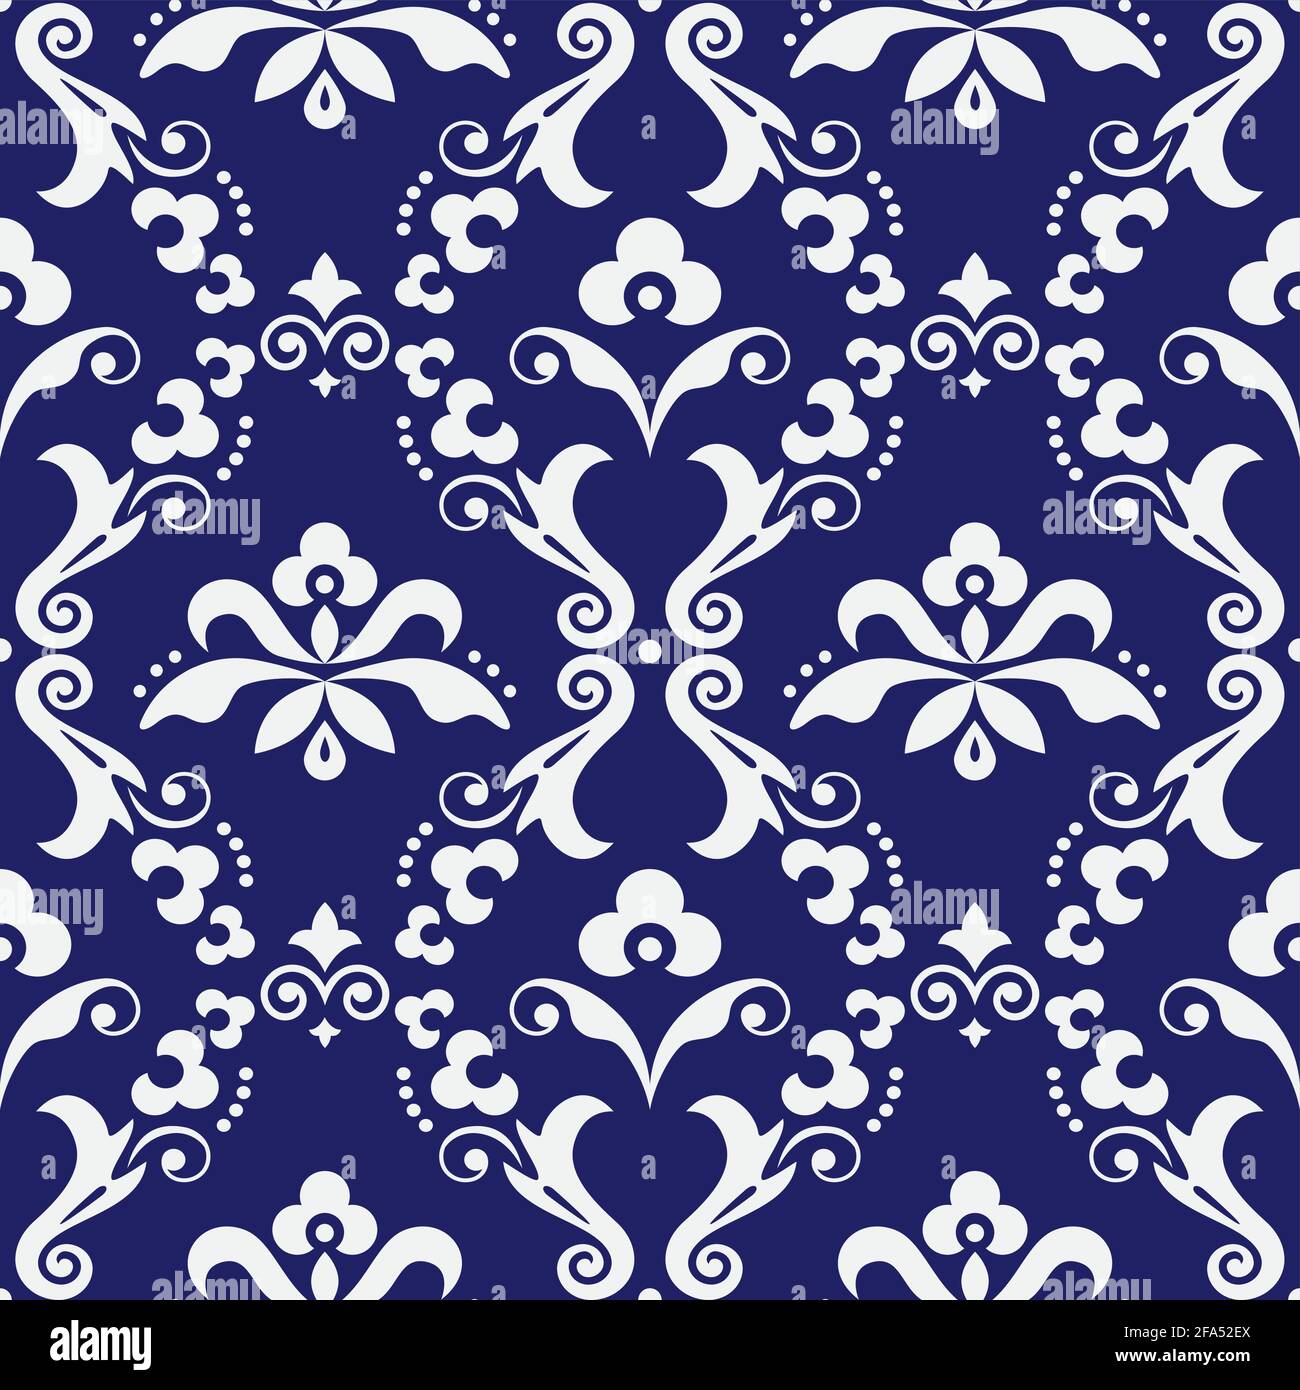 Damast Vektor nahtloses Textil- oder farbisches Druckmuster, altes viktorianisches repetitives Design mit Blumen, Wirbeln und Blättern in Weiß auf Marineblau Stock Vektor